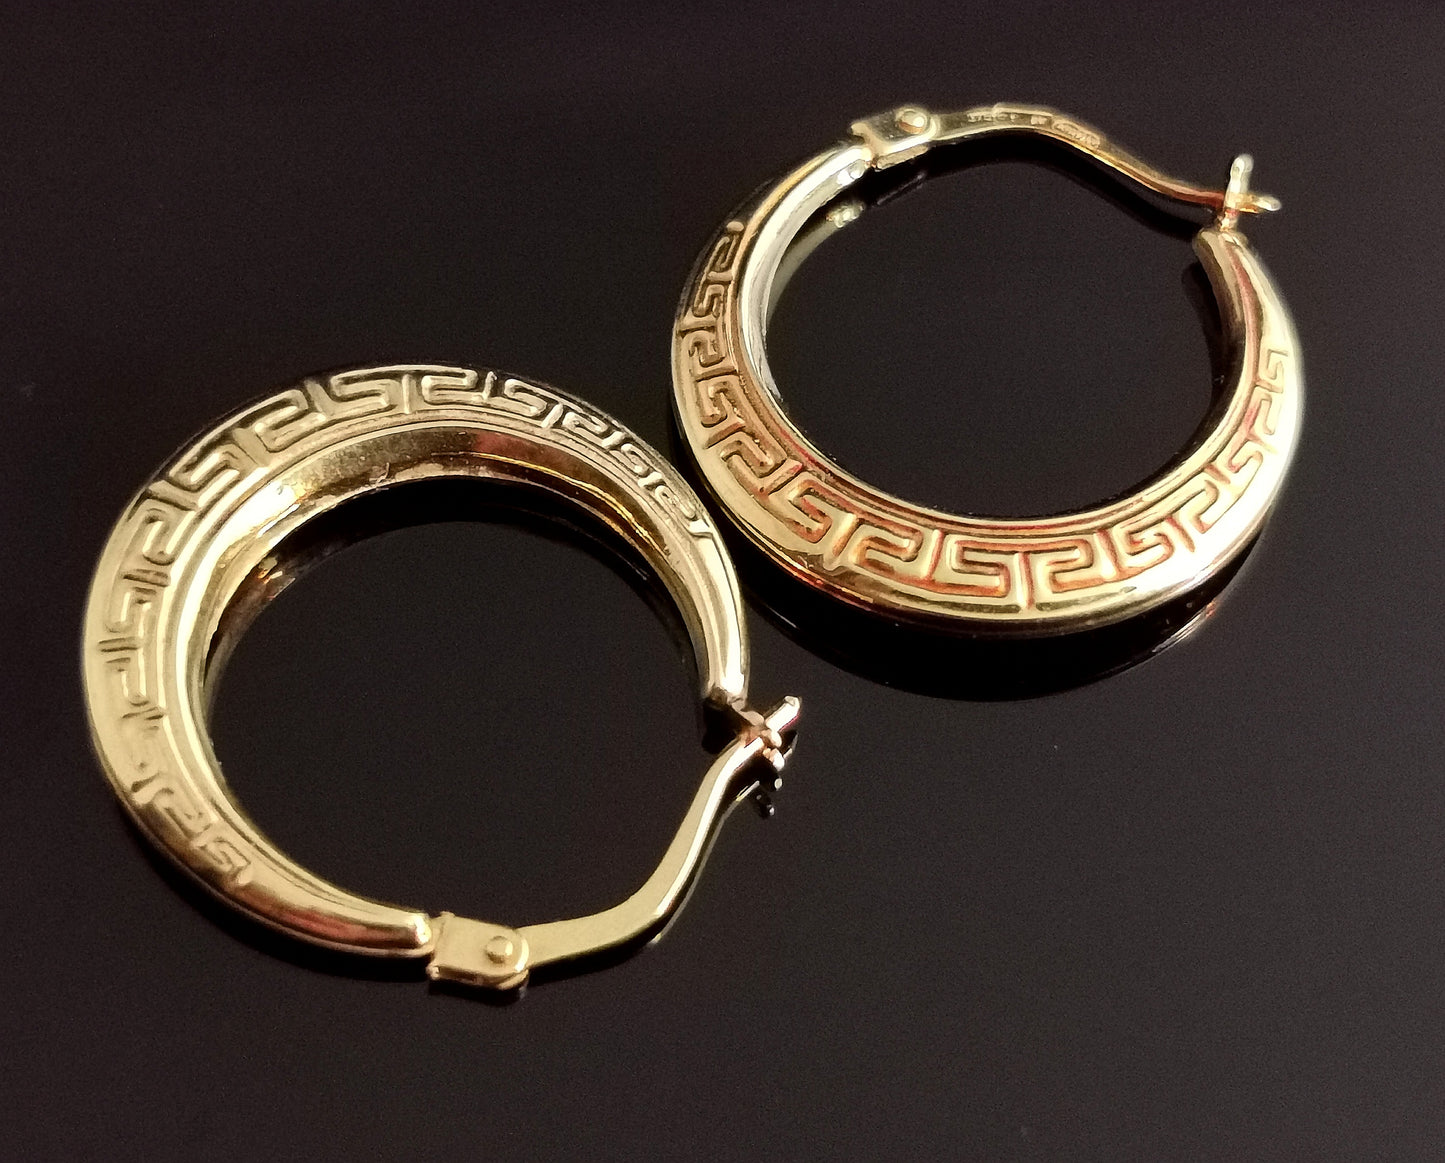 Vintage 9ct gold creole hoop earrings, Greek key